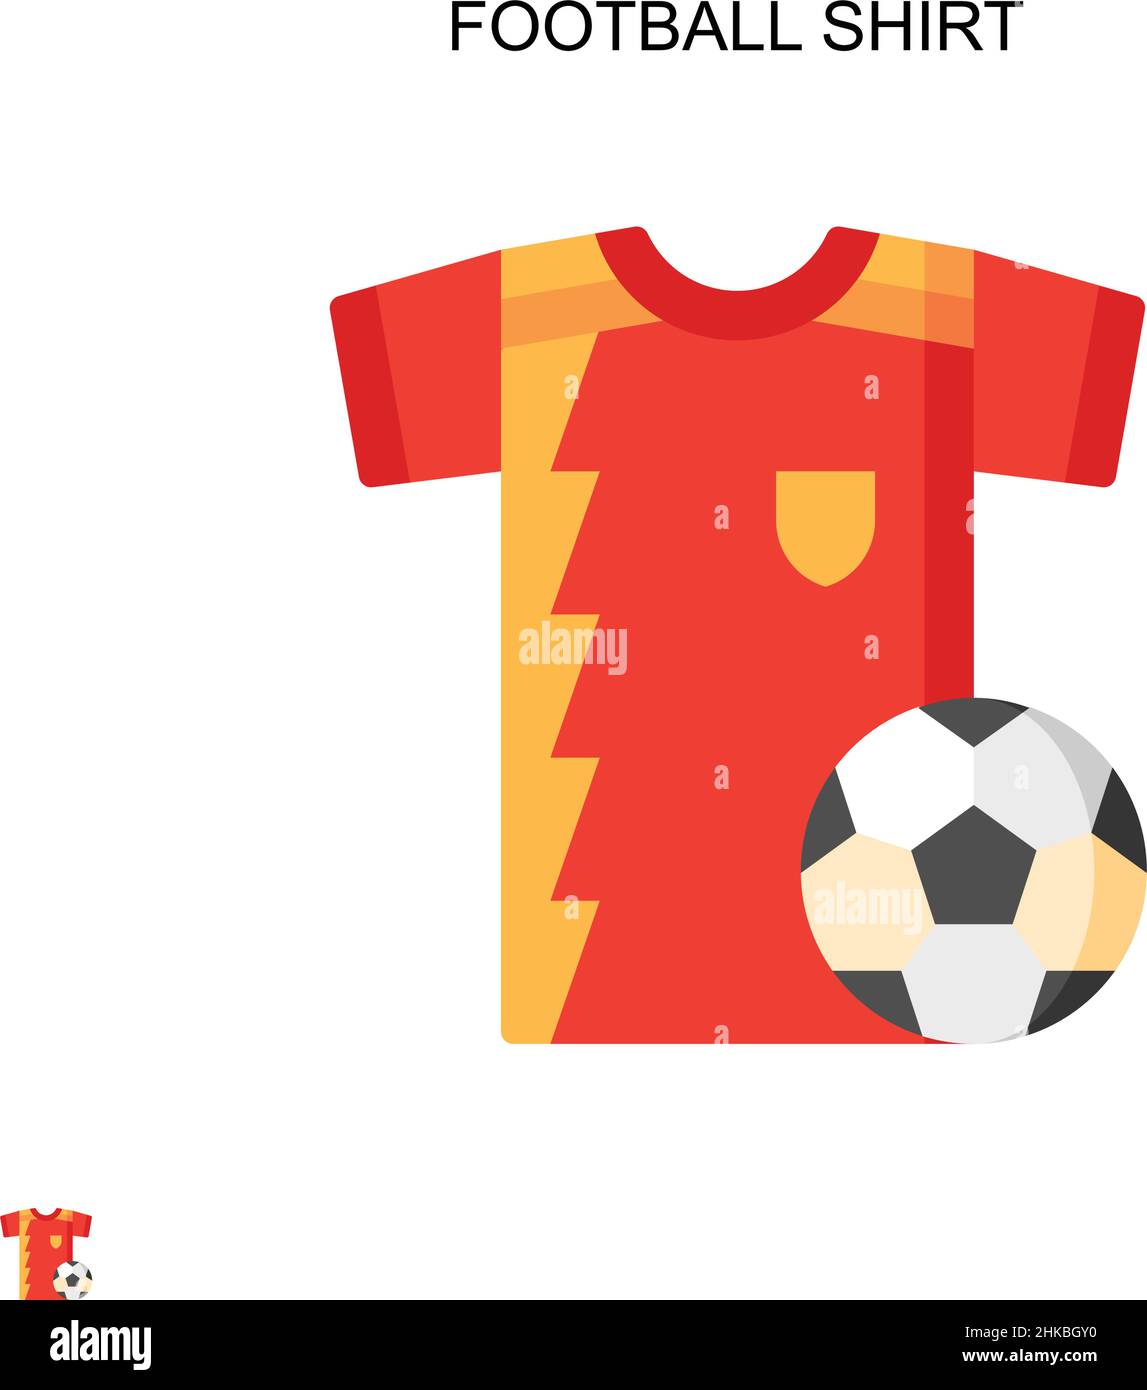 Diseños de camisetas de balon de futbol & más Merch